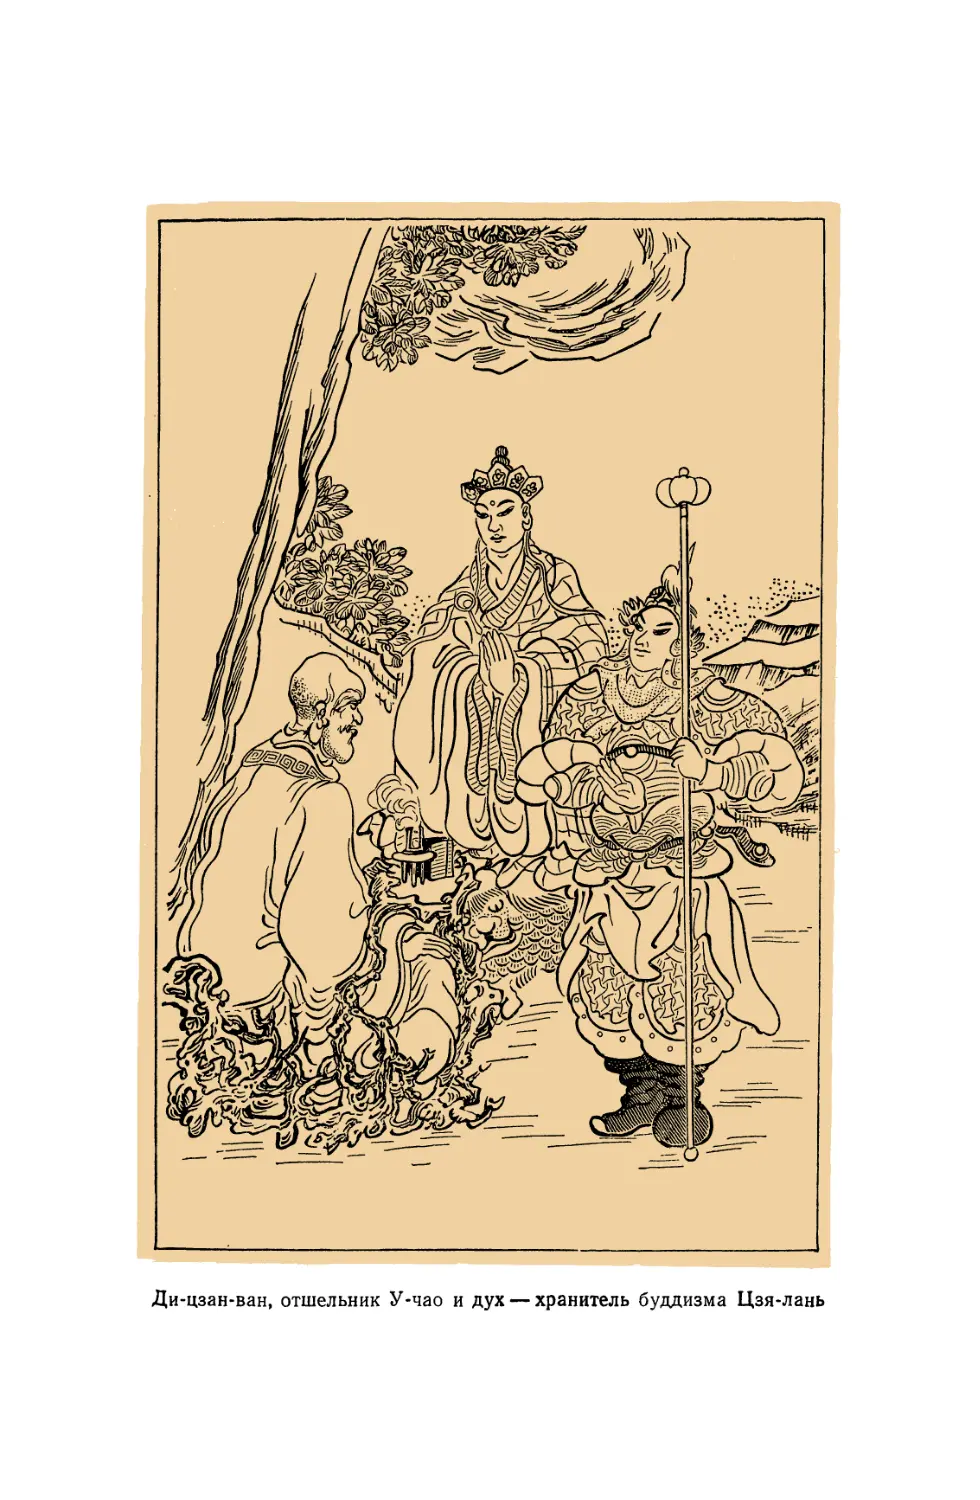 Вклейка. Ди-цзан-ван, отшельник У-чао и дух — хранитель буддизма Цзя-лань